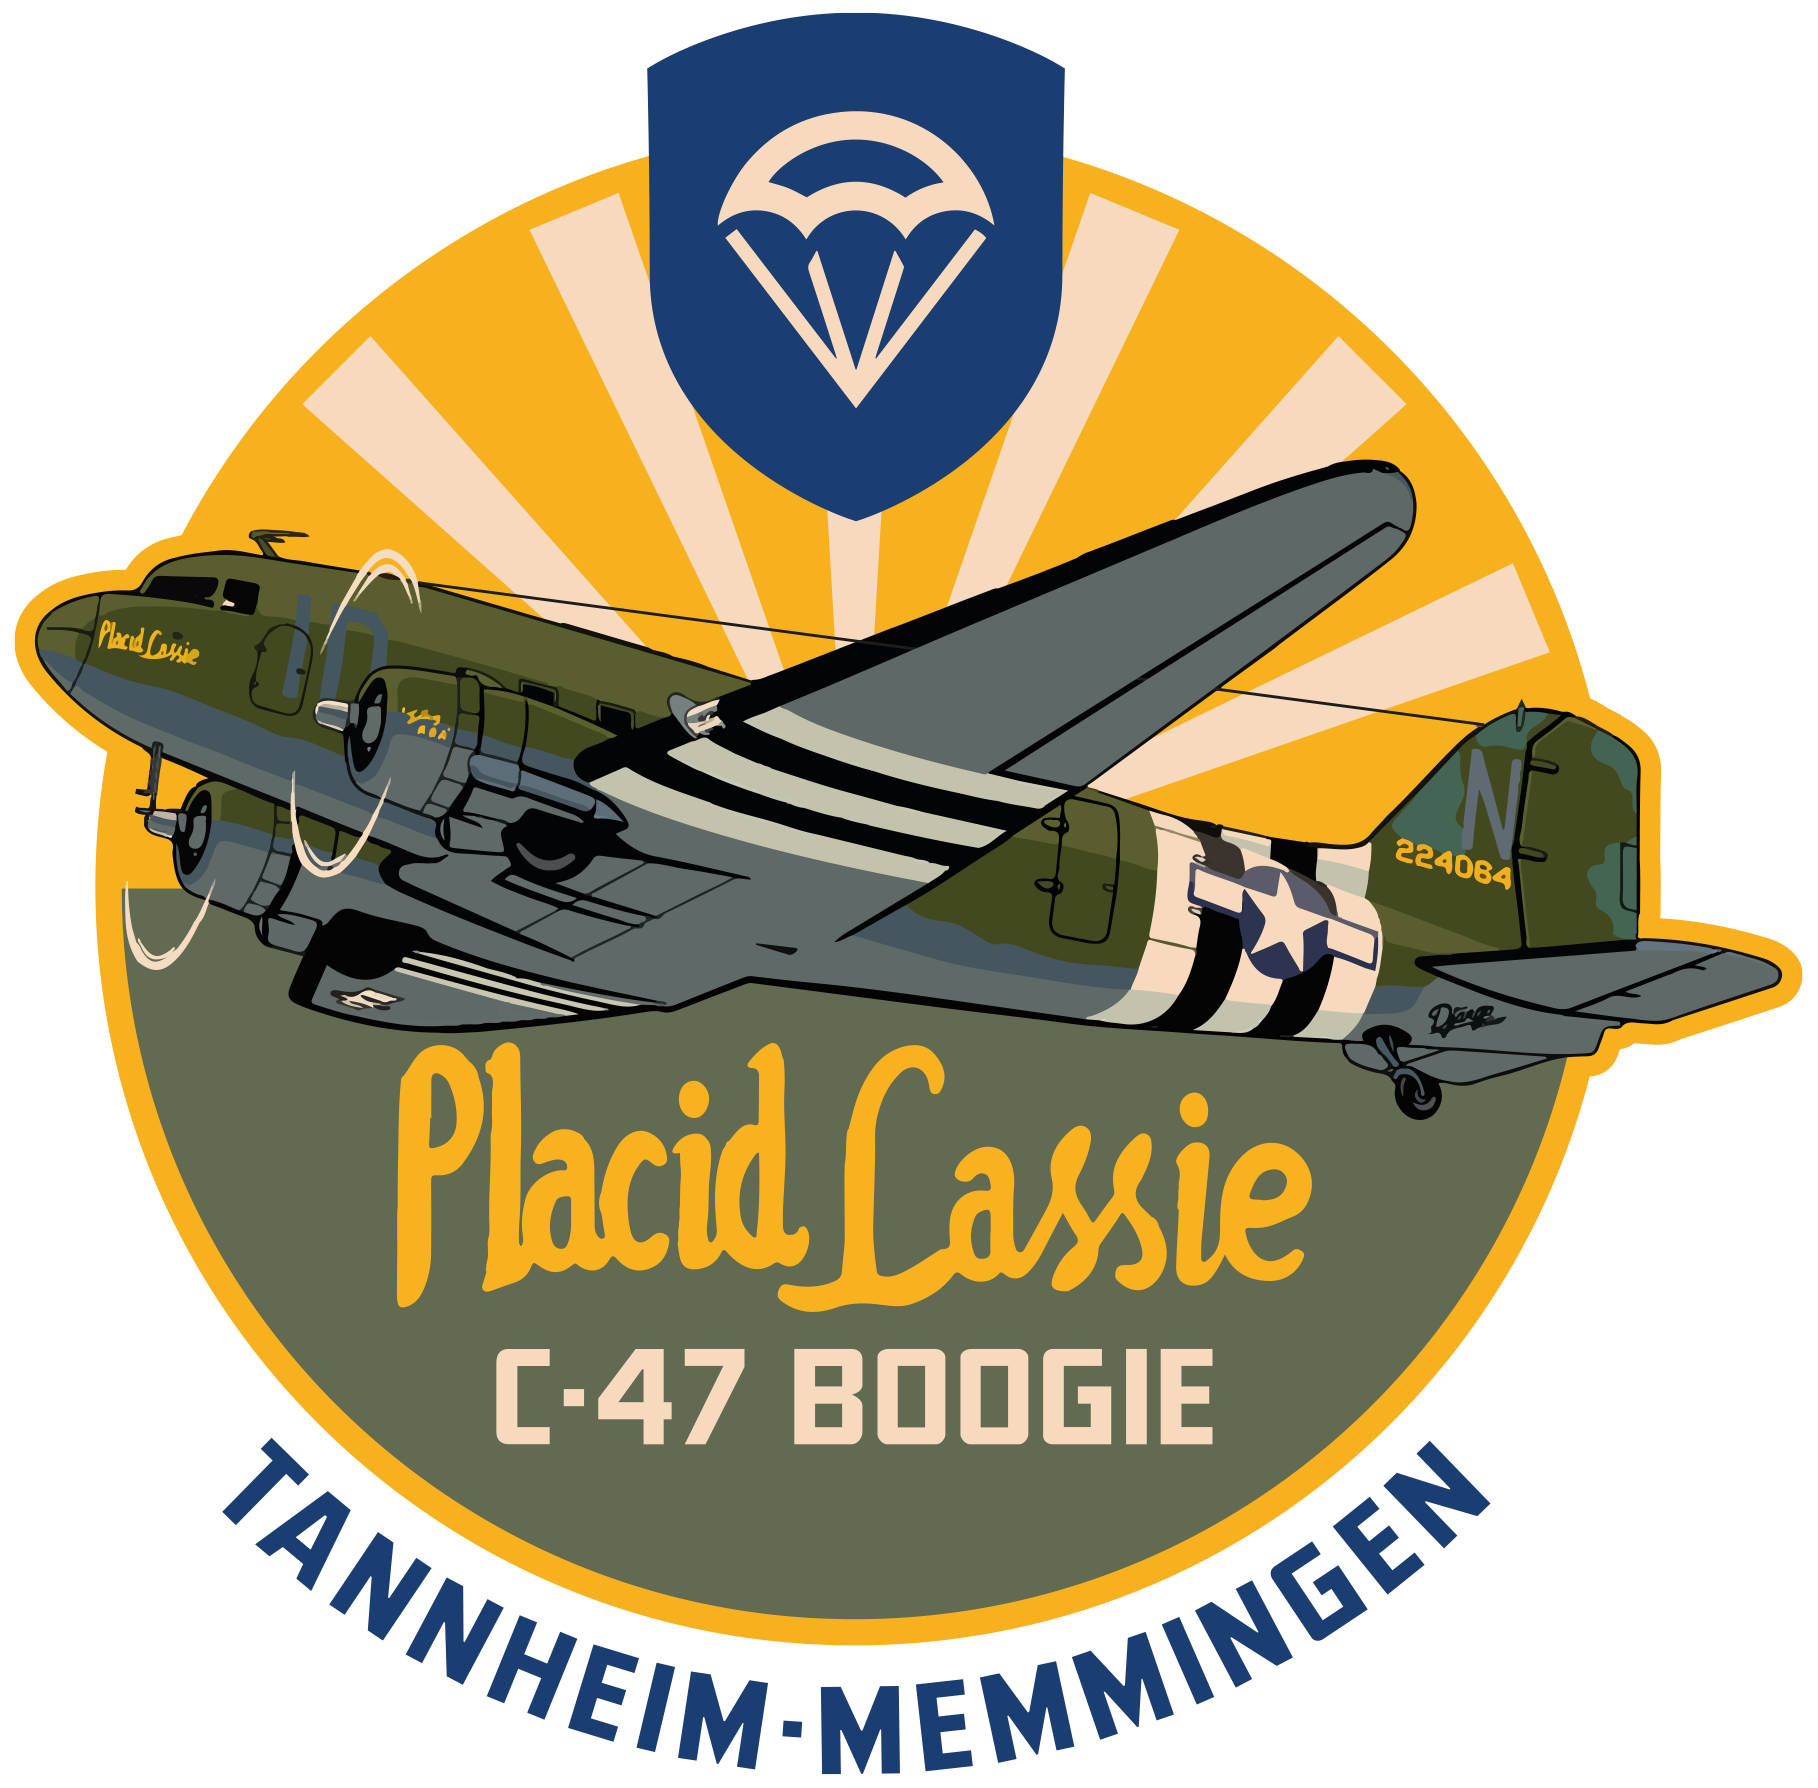 Skydive Boogie Placid Lassie